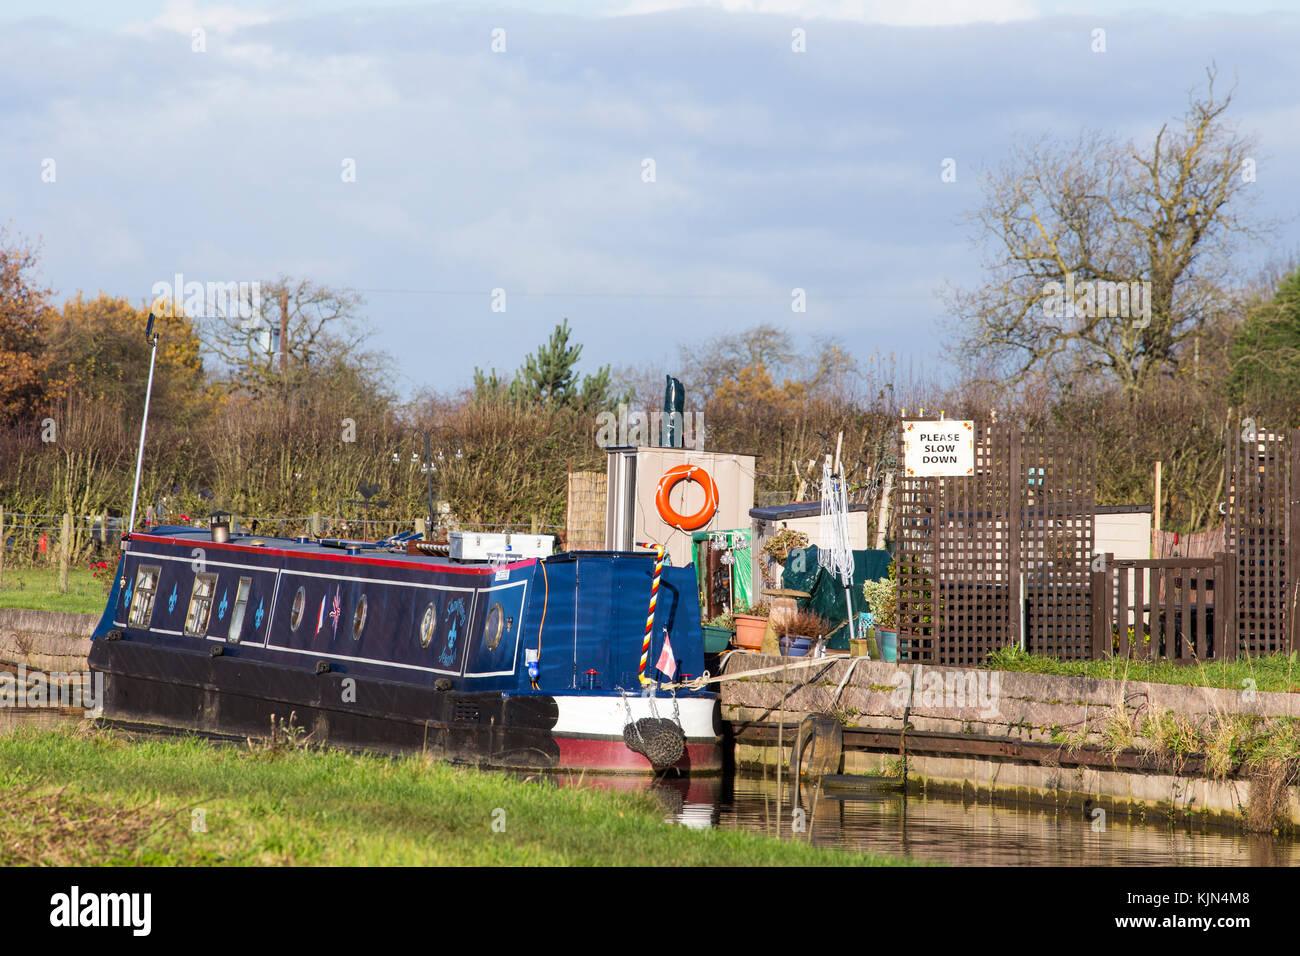 Bateau étroit avec panneau Please Slow Down sur le canal Trent et Mersey à Elworth Sandbach Cheshire Royaume-Uni Banque D'Images